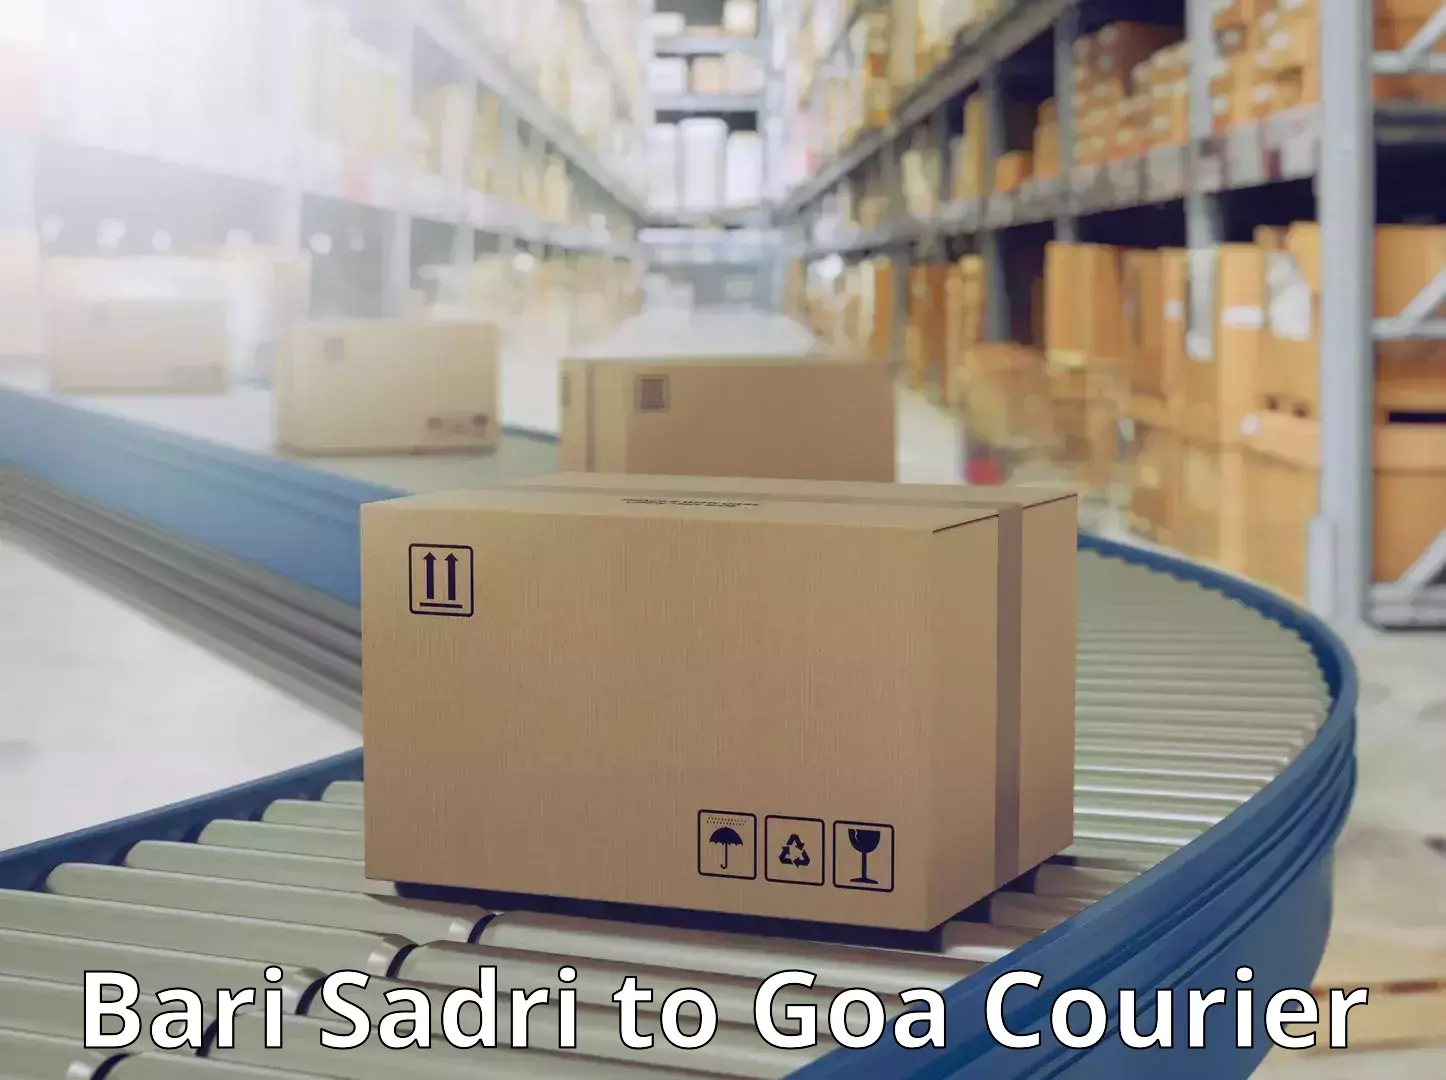 Business delivery service Bari Sadri to South Goa